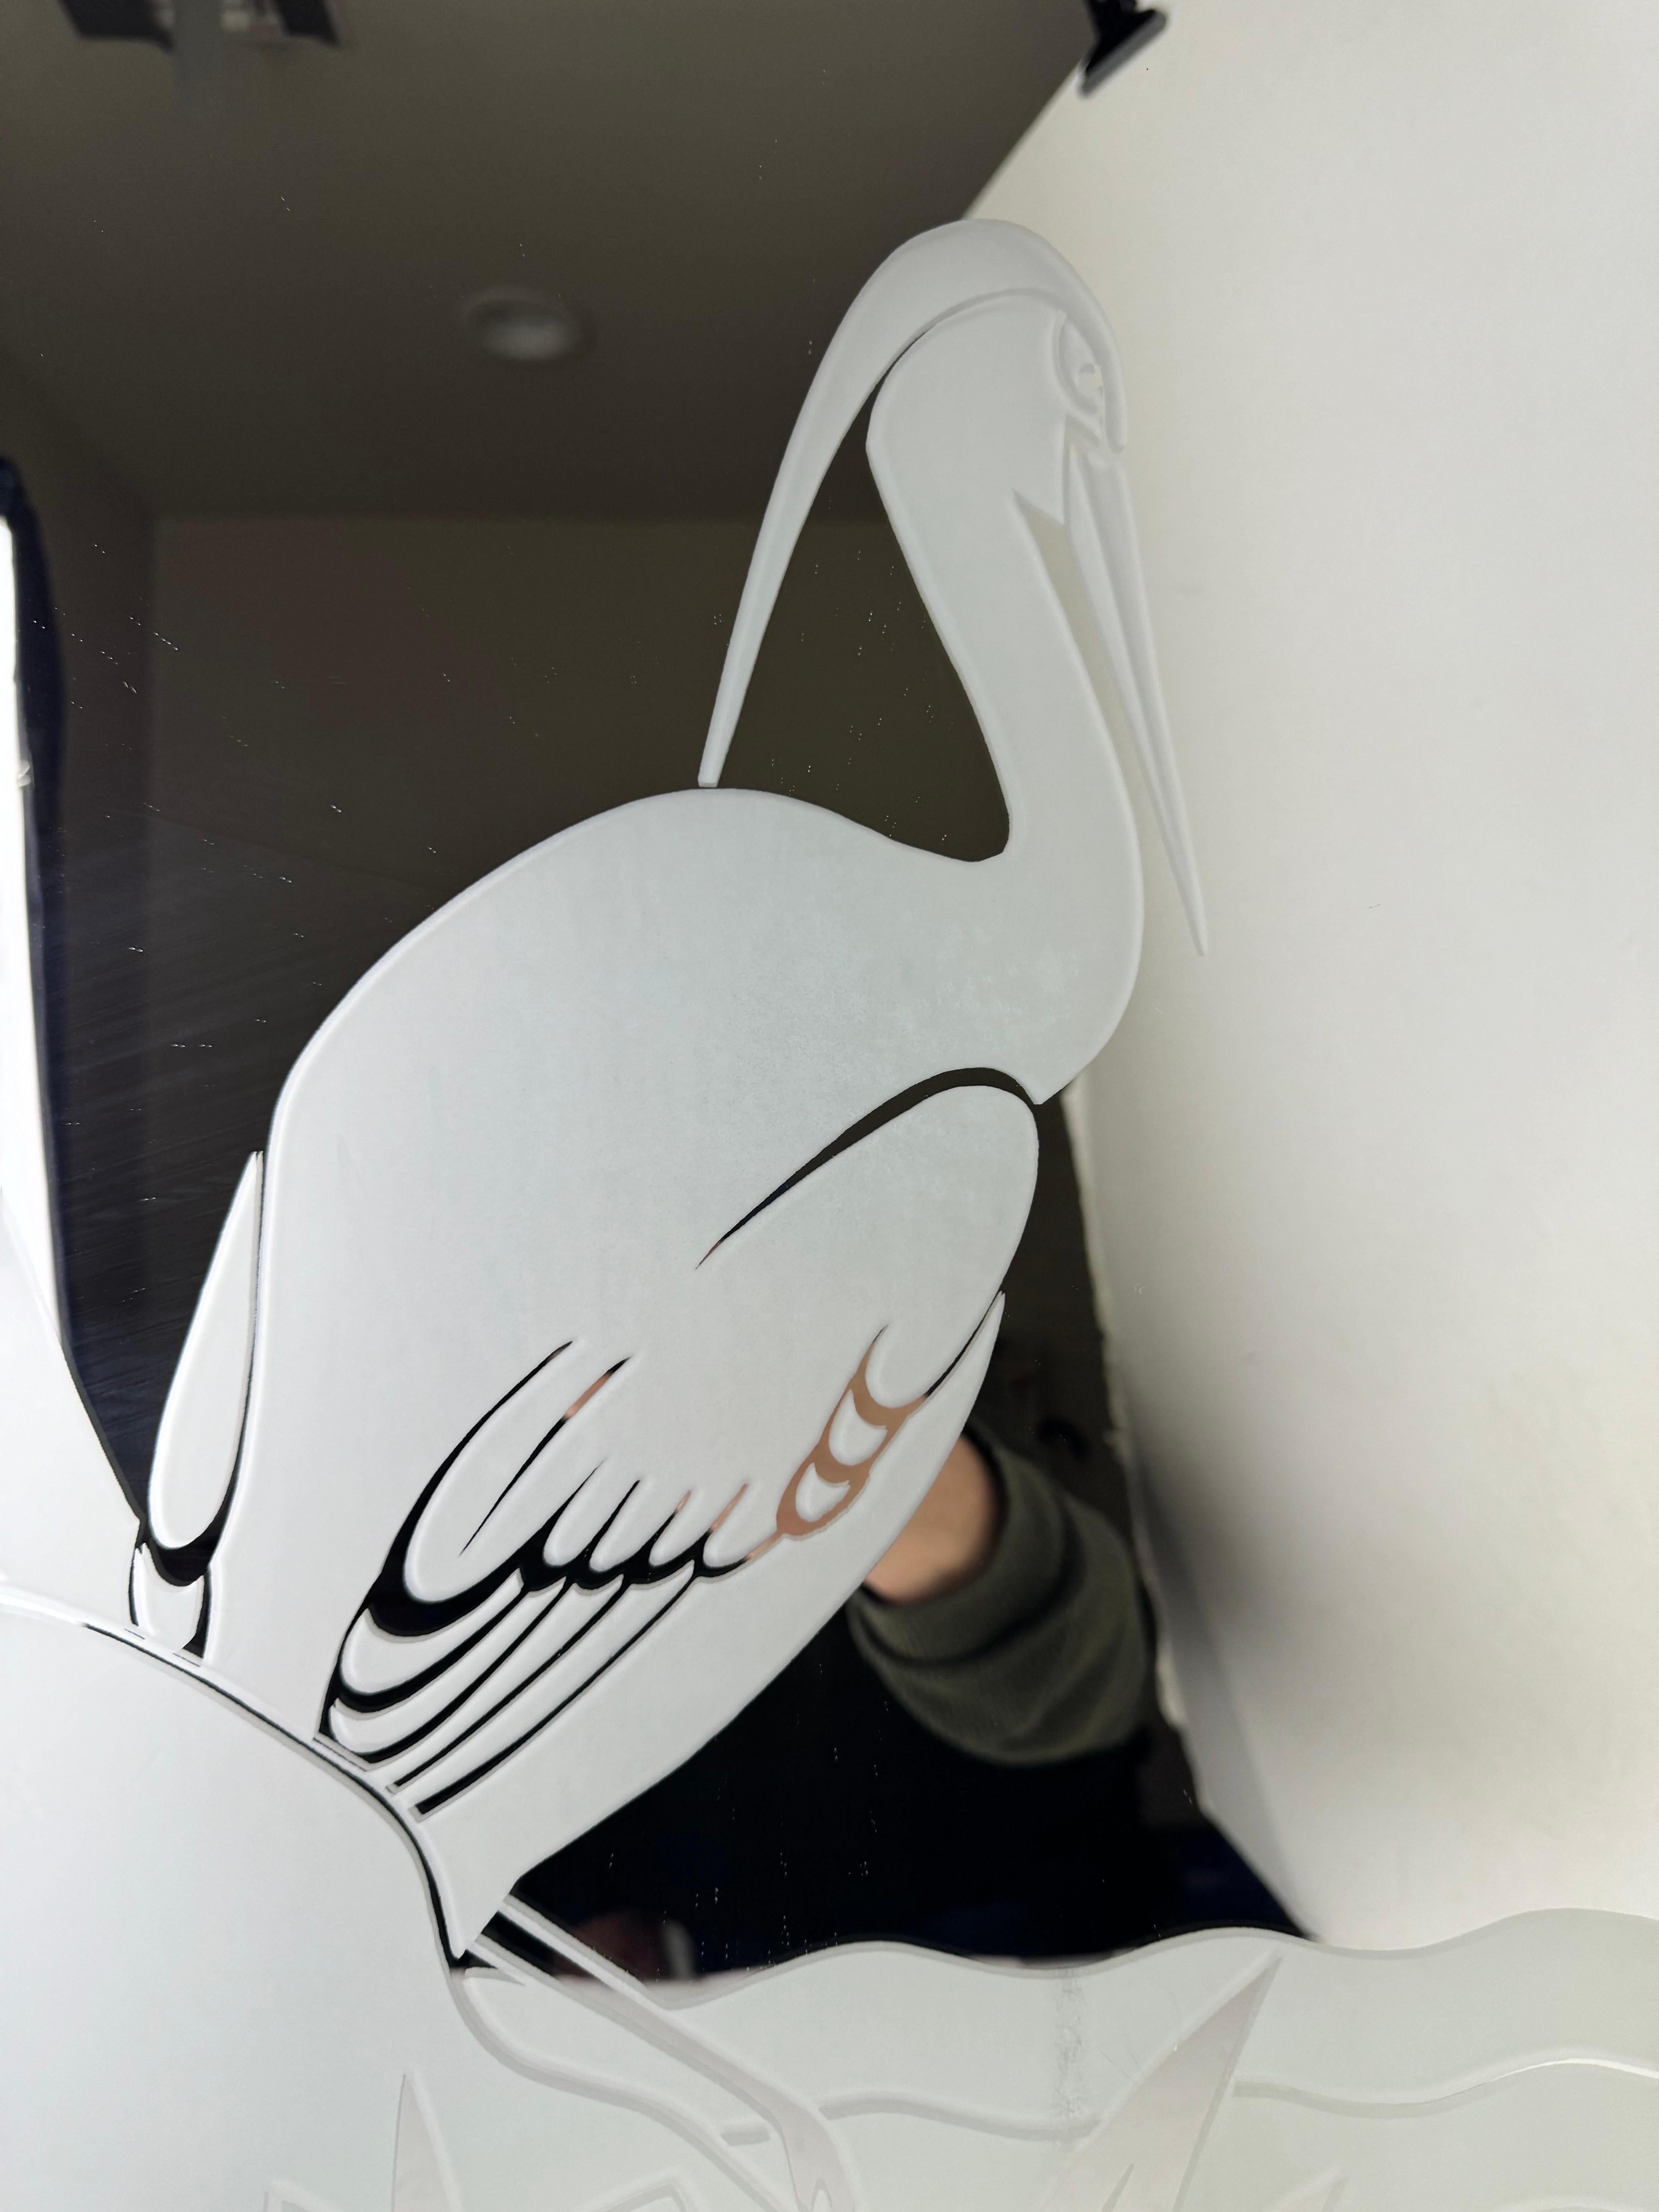 Vintage mid century frosted mirror in brass frame depicting a stork or heron wading through the water. Ce tableau a été créé par l'artiste Gloria Artisticsen, le miroir a été fabriqué par la Windsor Art and Mirror Company à Pico Rivera, CA.

Ce